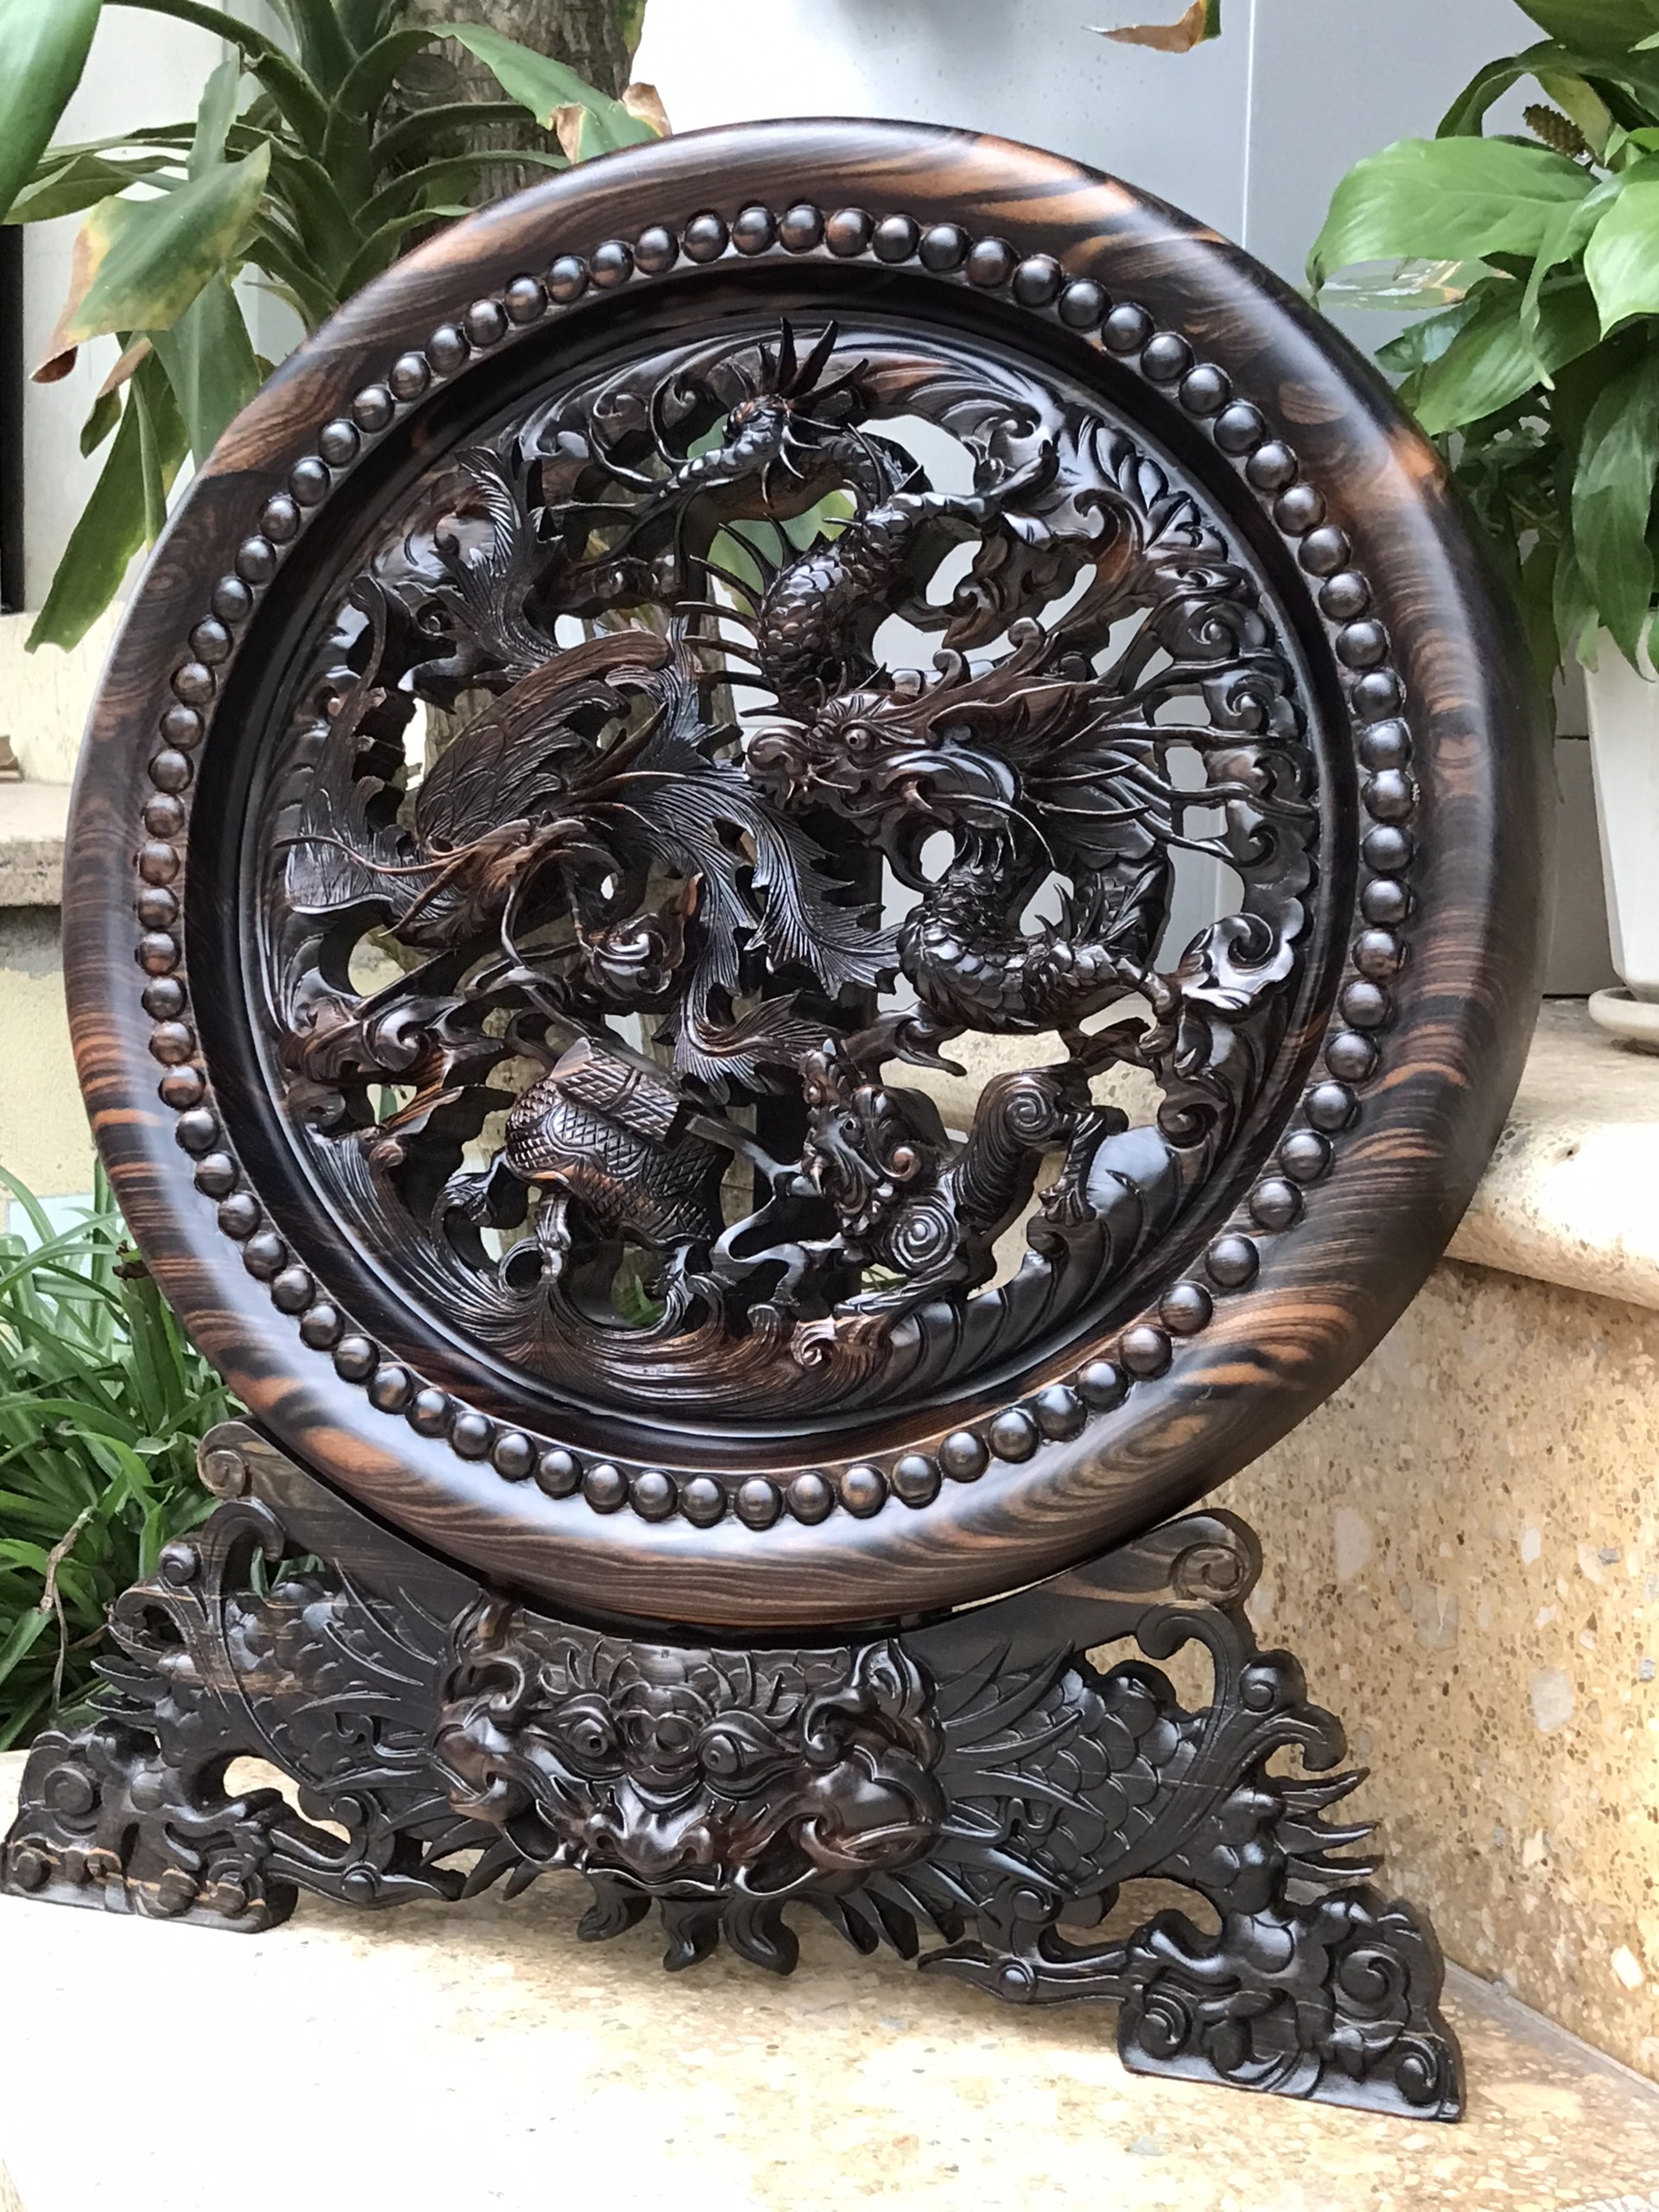 Đĩa trang trí phong thủy trạm khắc tứ linh bằng gỗ mun hoa cực đẹp kt mặt tròn 40×3,5cm +kệ chân đế cao tổng 48cm